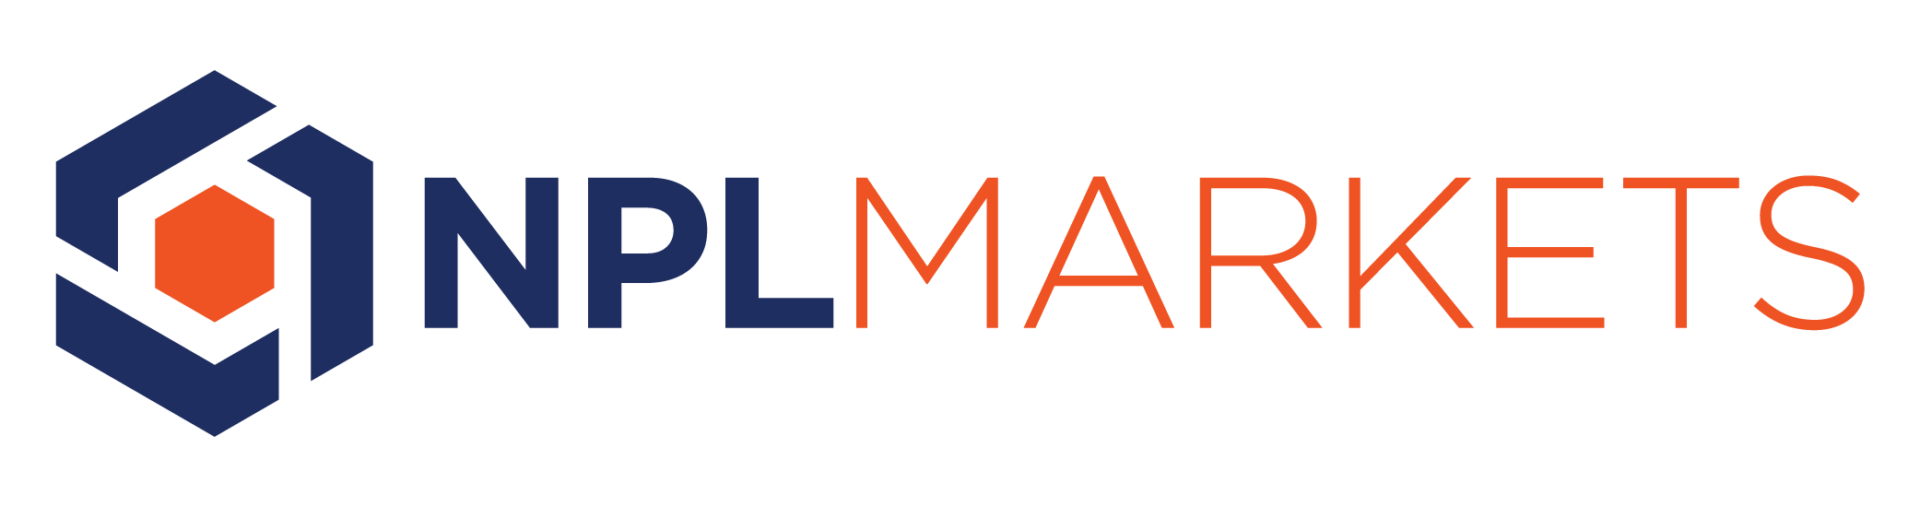 NPL Markets - Logo & Text (1)